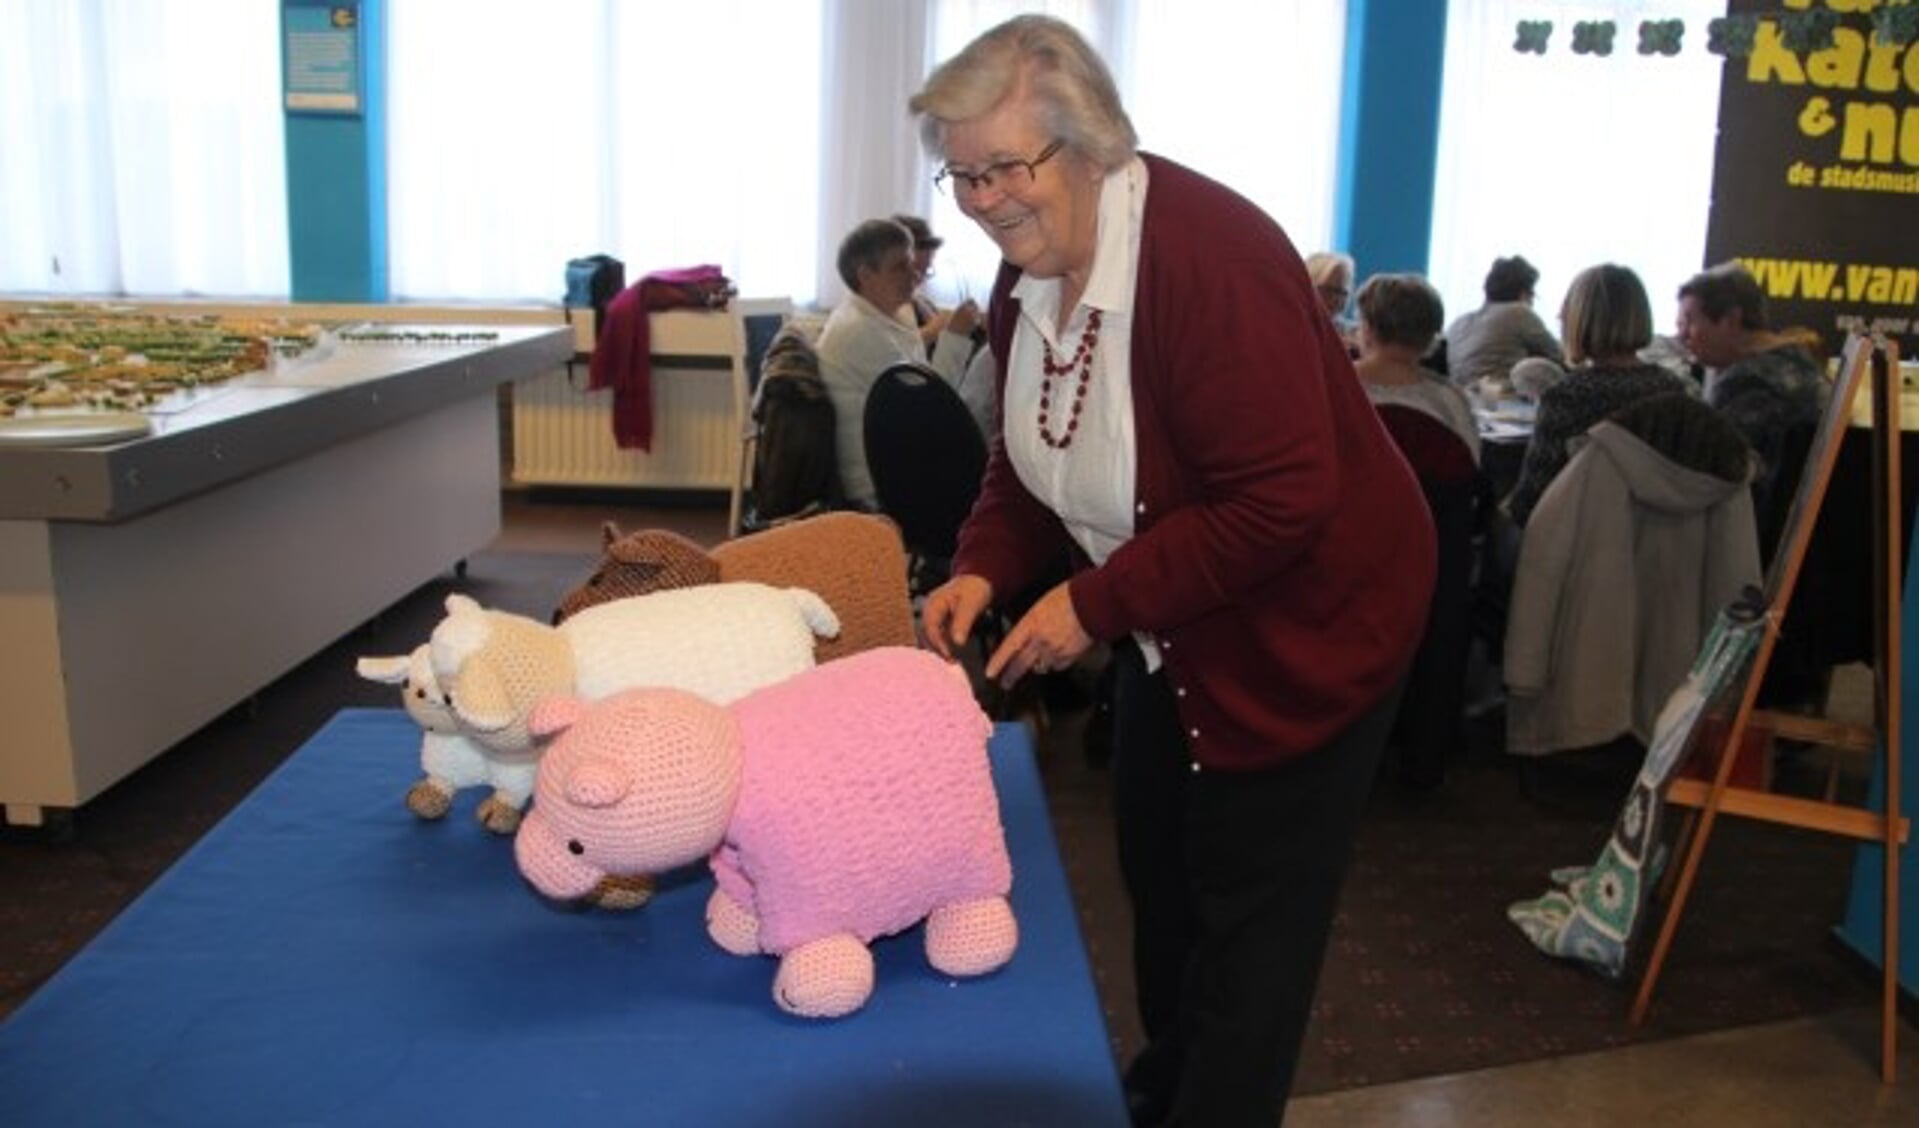 Bezoekster Katja breit ook met veel plezier de wonderlijkste kussens in de vorm van een schaap, beer of varken.